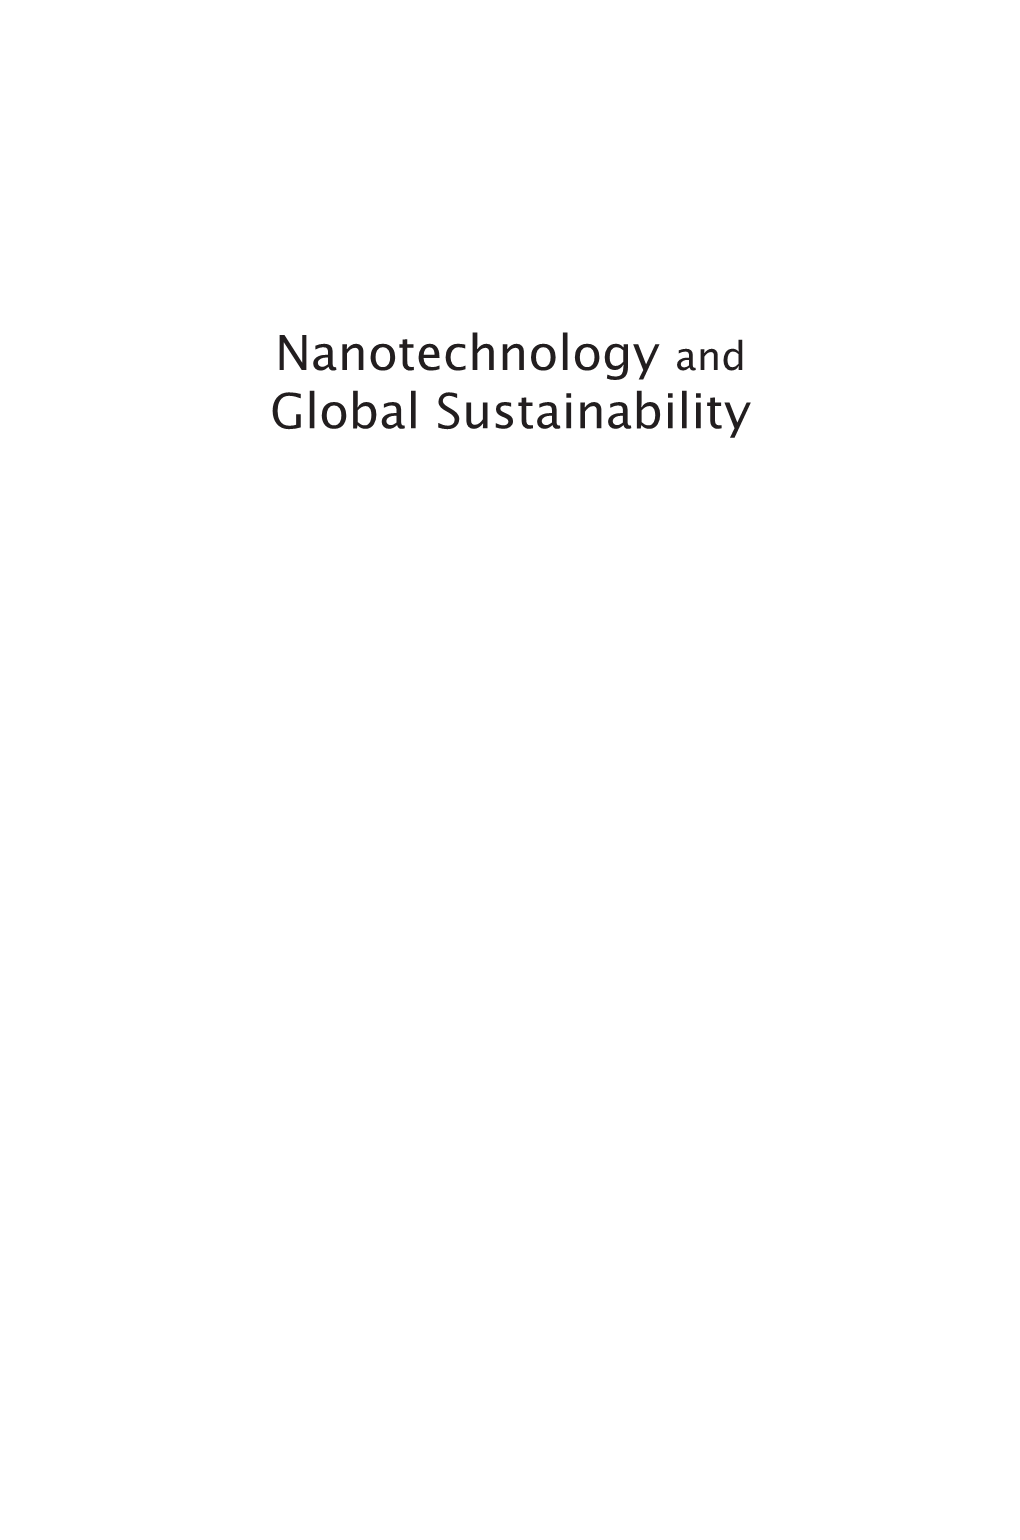 Nanotechnology Without Growth